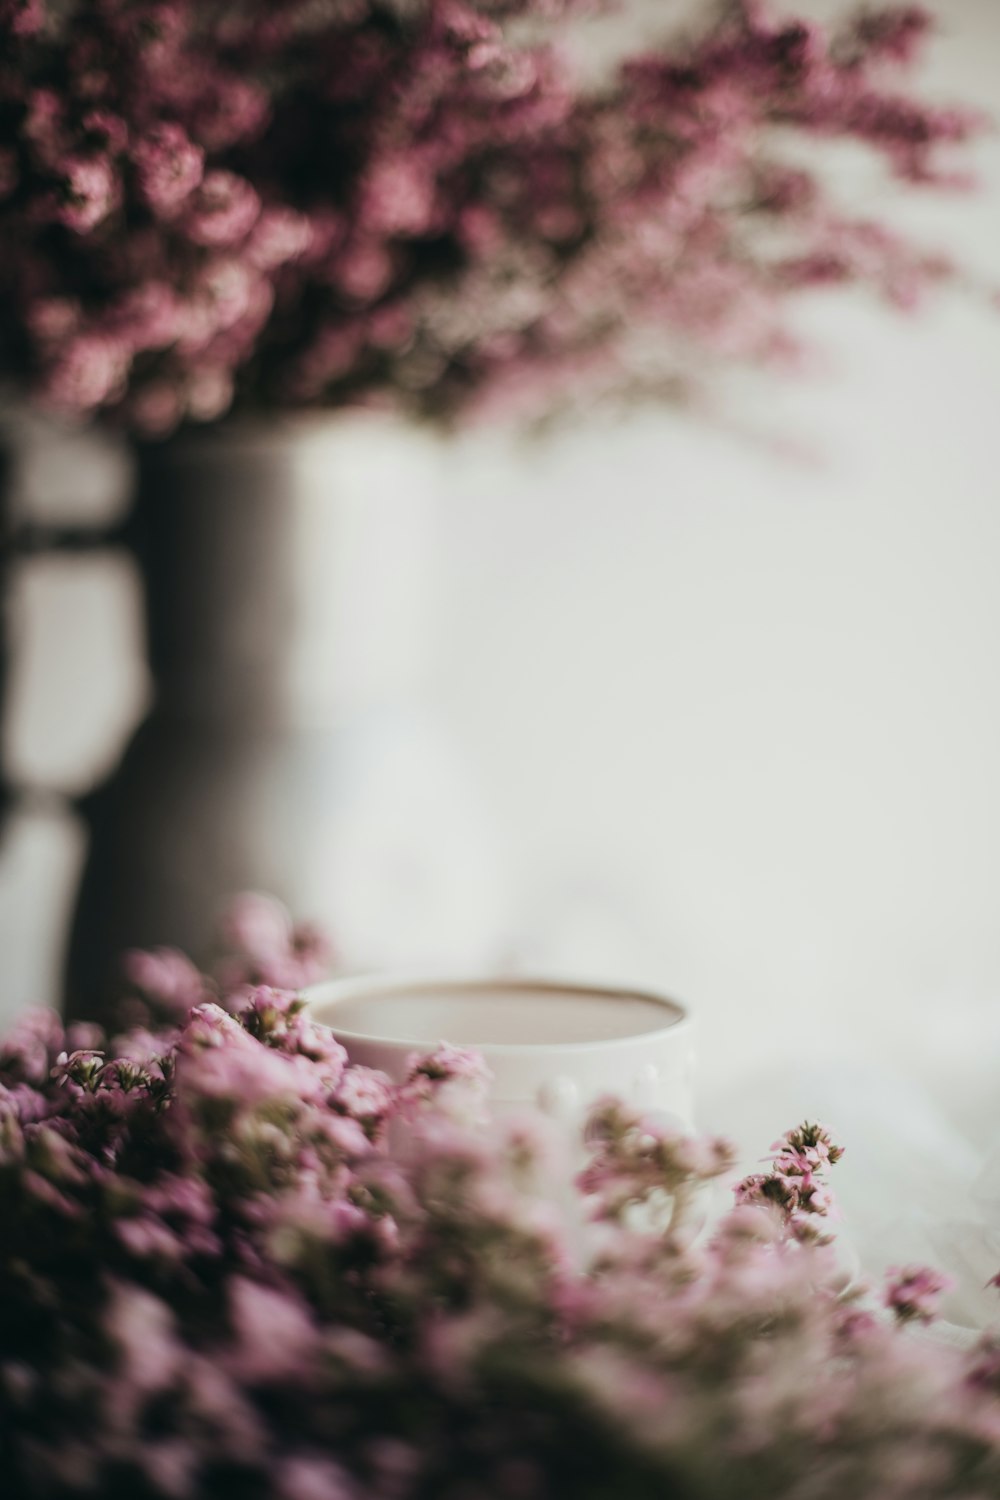 flores moradas junto a taza de cerámica blanca